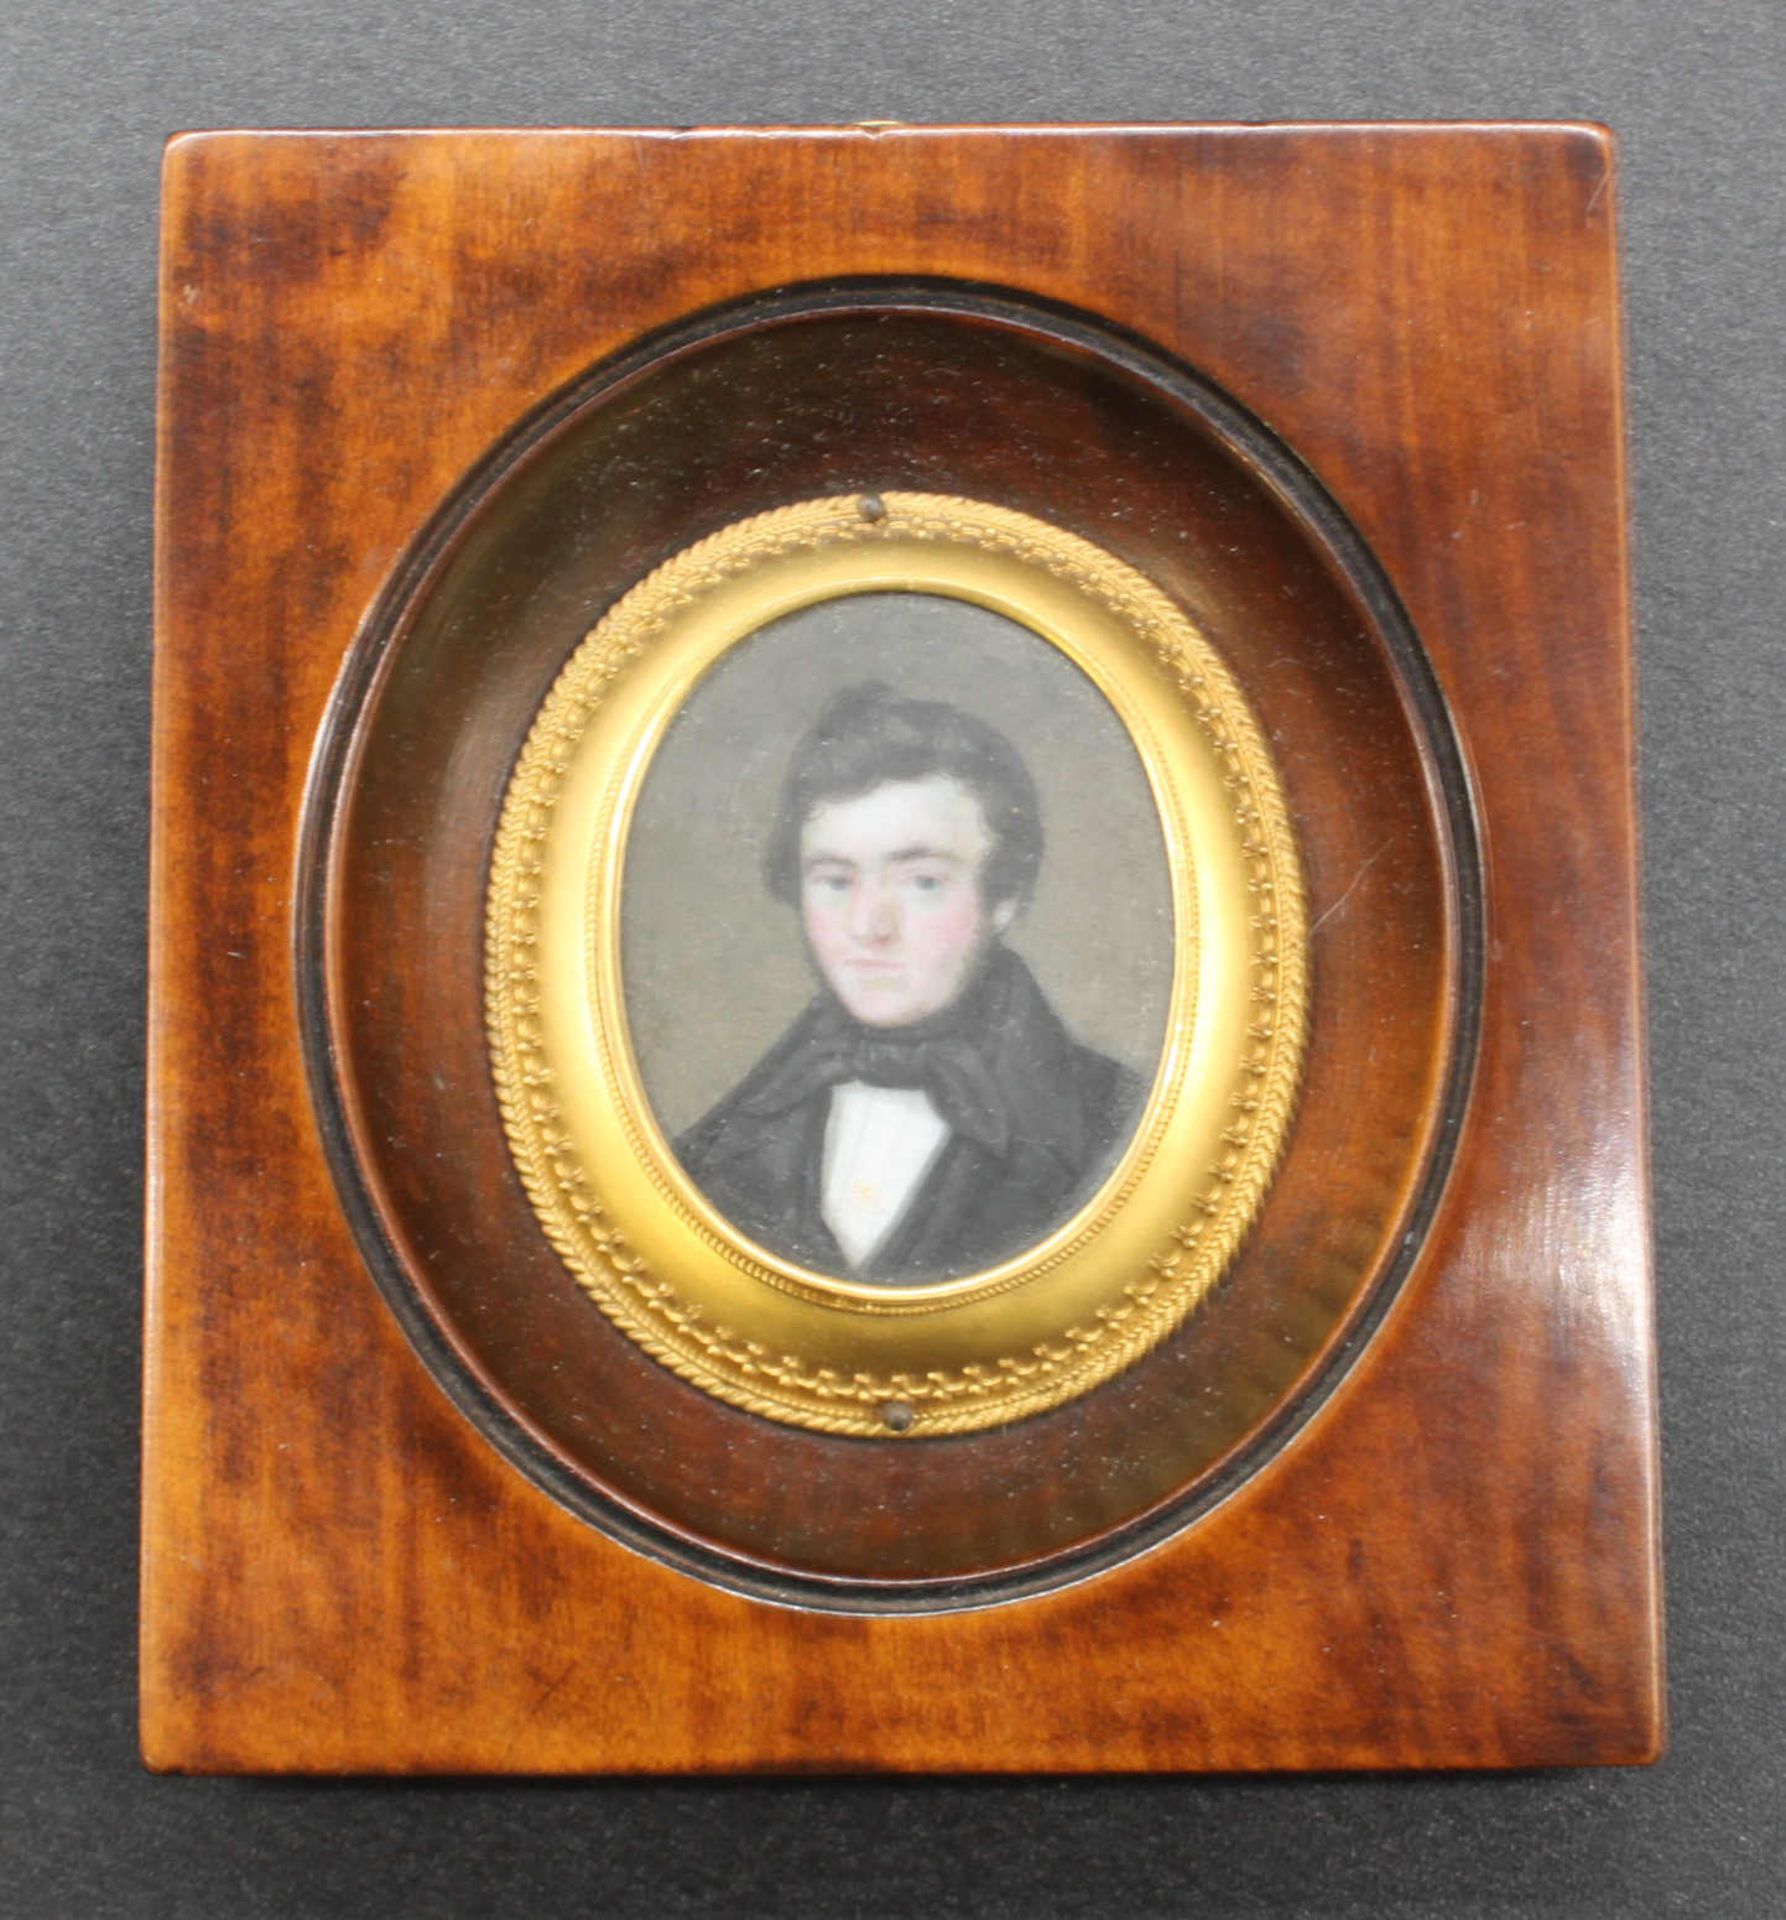 Herrenportrait, datiert 1839. Kleine Miniatur im Original-Holzrahmen und vergoldeter